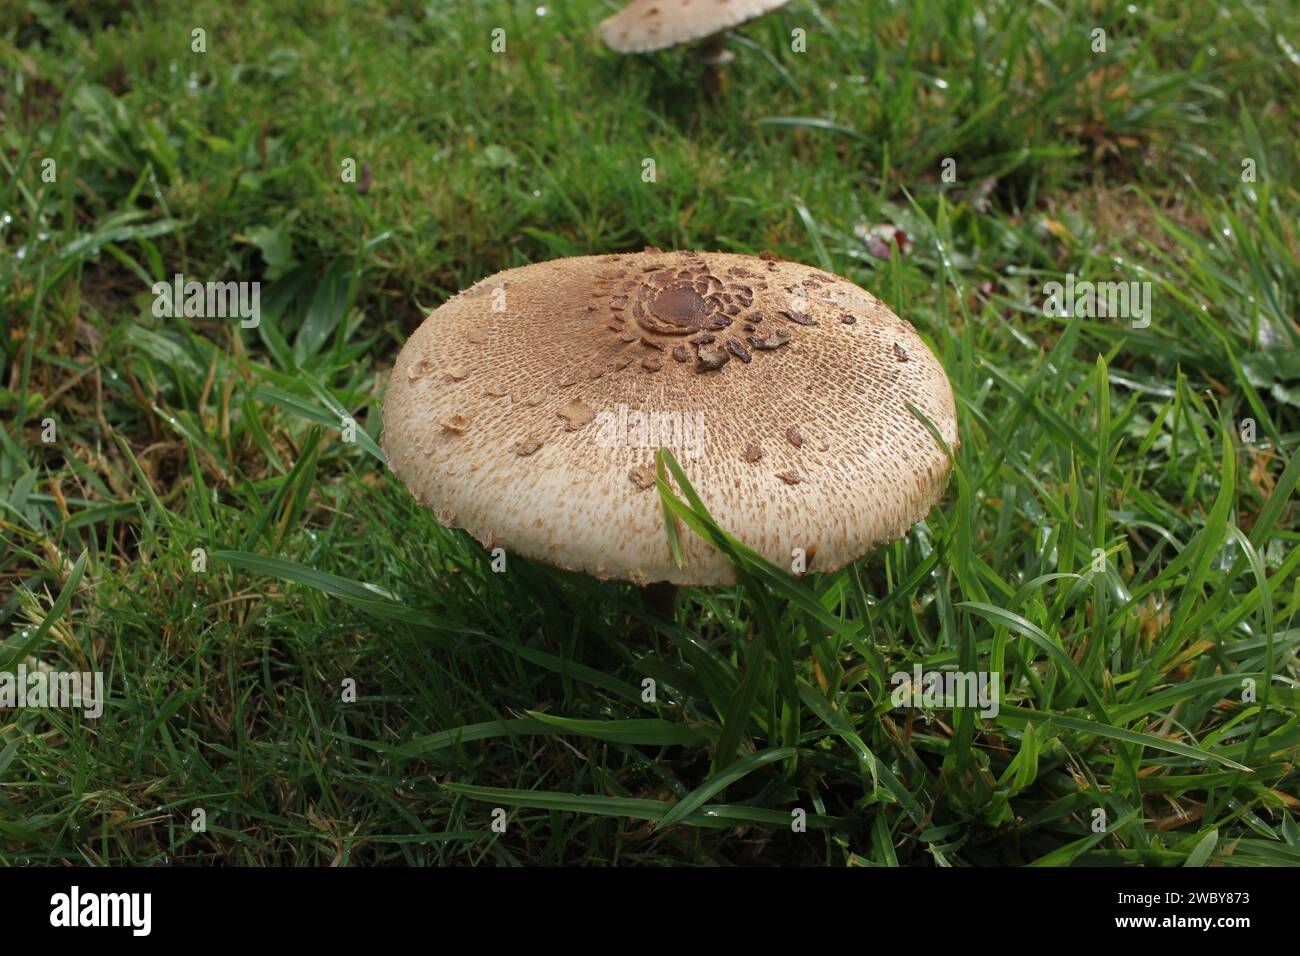 Esalta i tuoi sensi con questo incantevole scorcio nella vita segreta dei funghi alpini Foto Stock